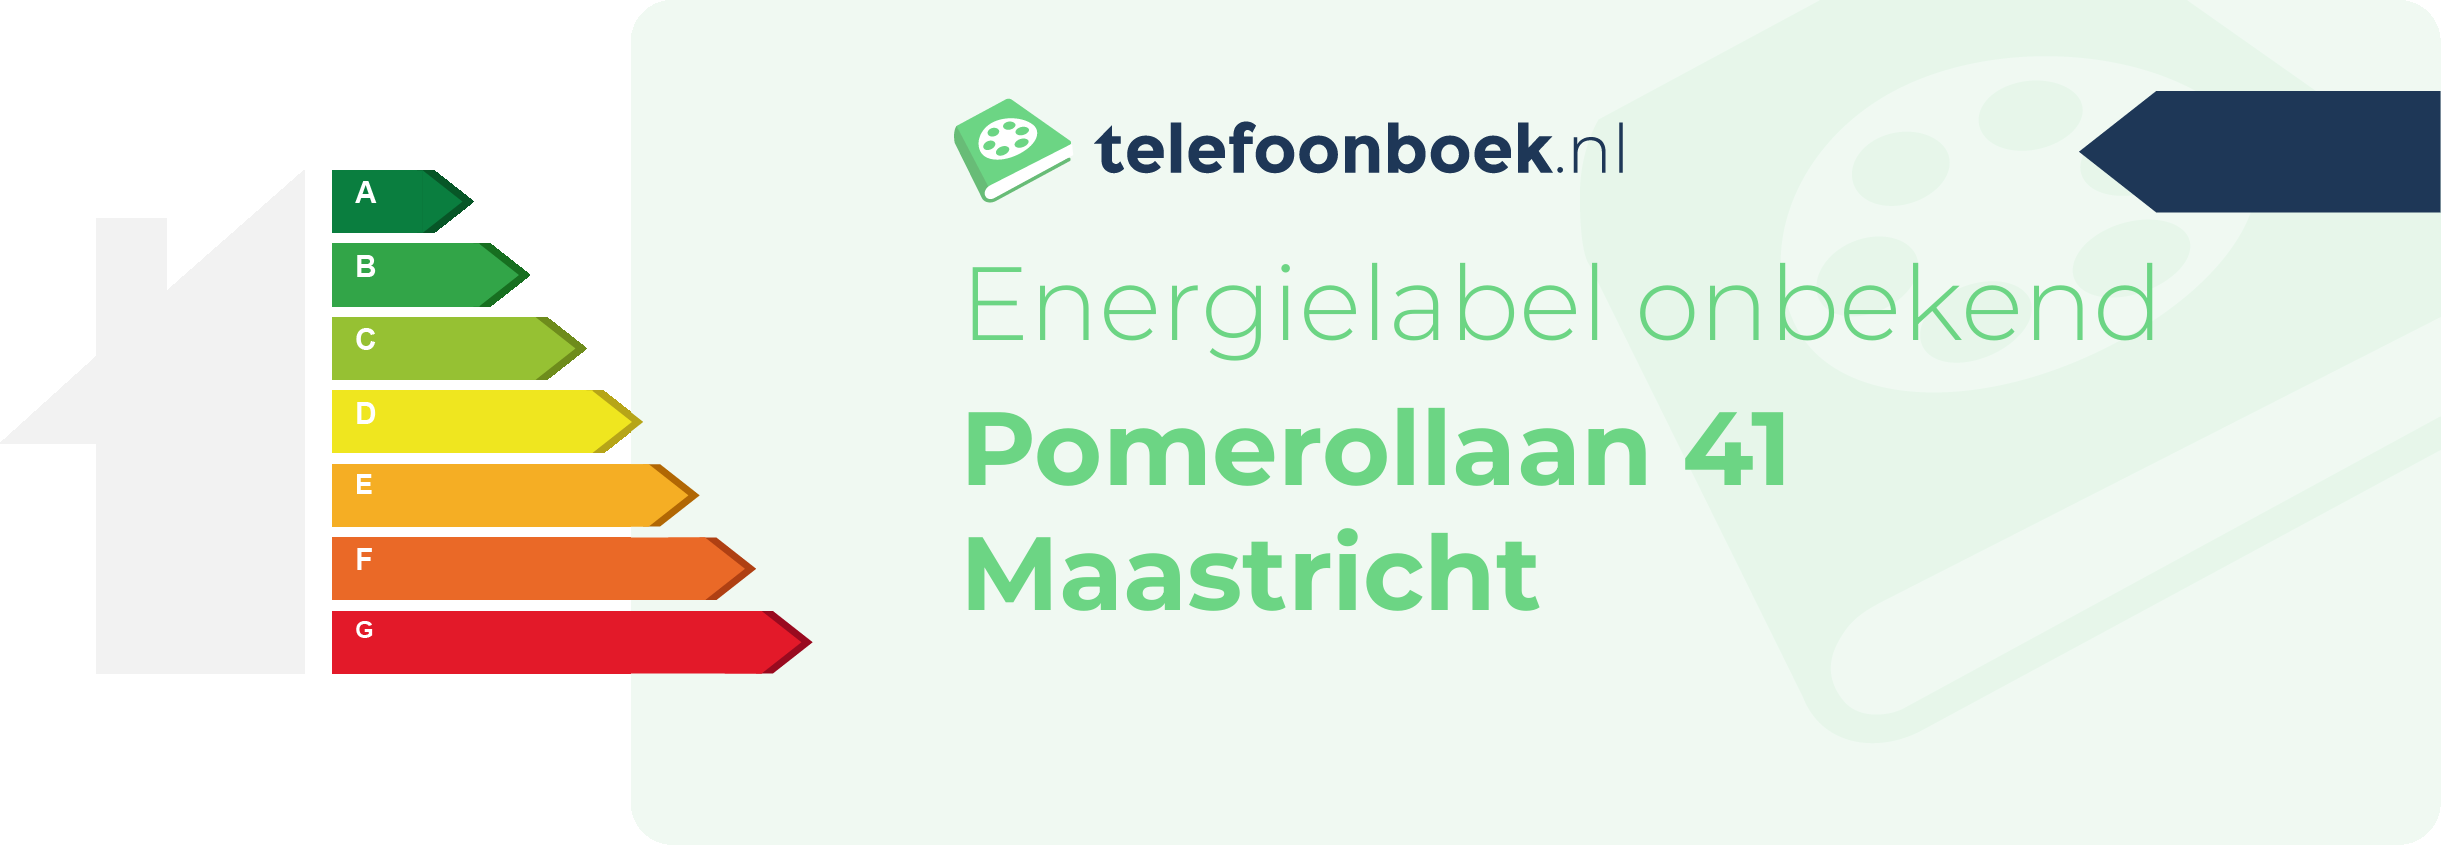 Energielabel Pomerollaan 41 Maastricht